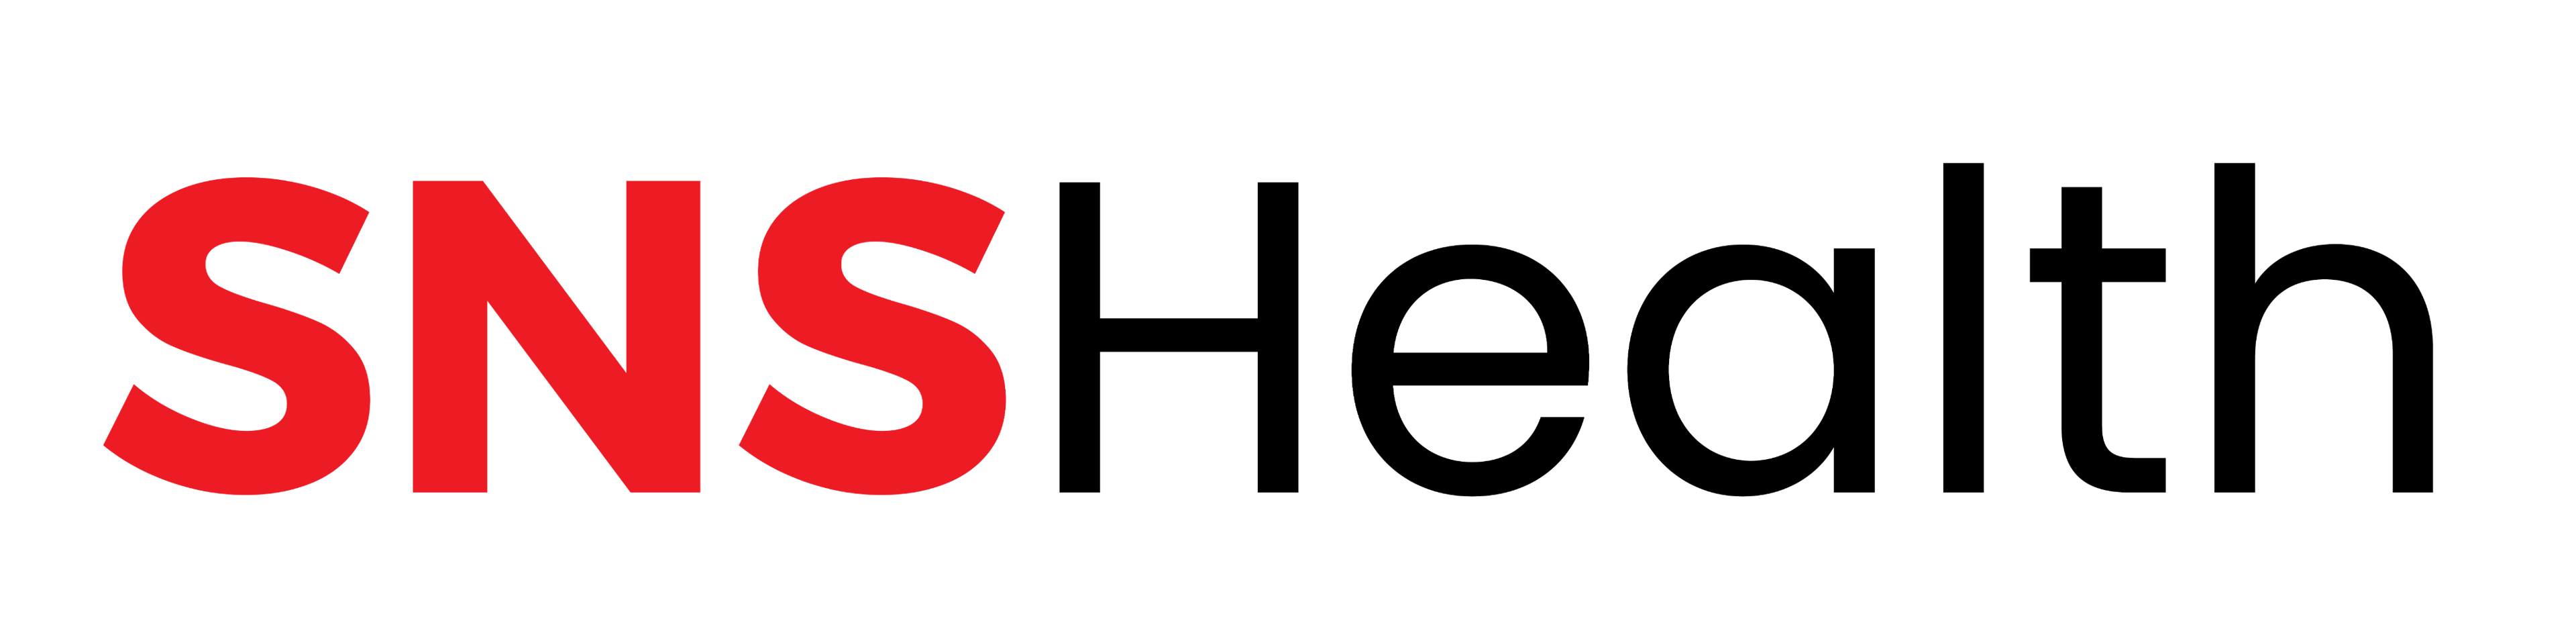 SNS Help Center logo